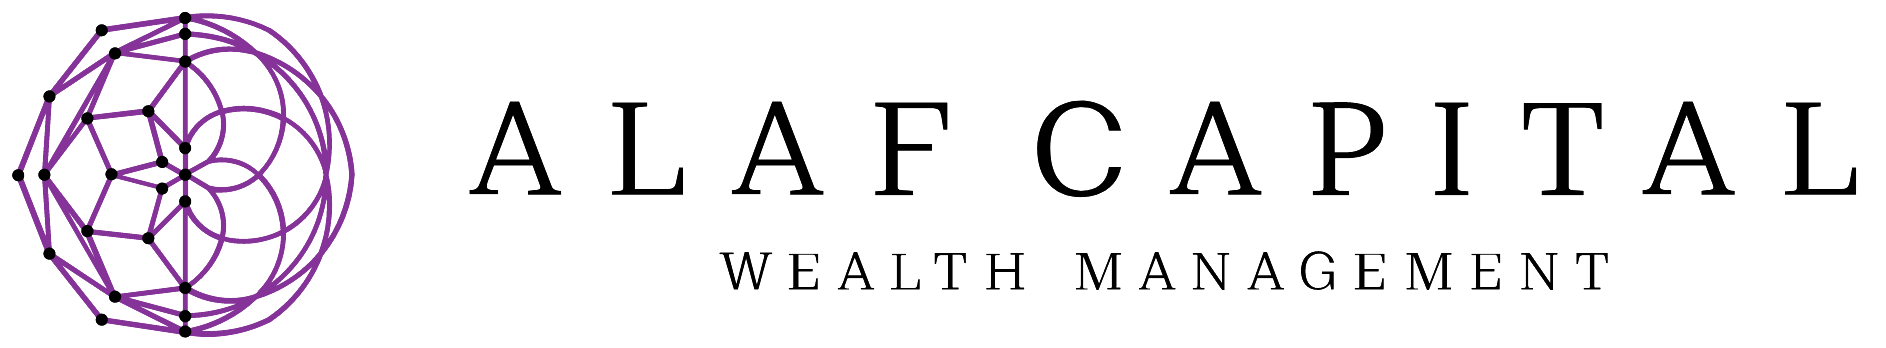 ALAF Capital - Wealth Management